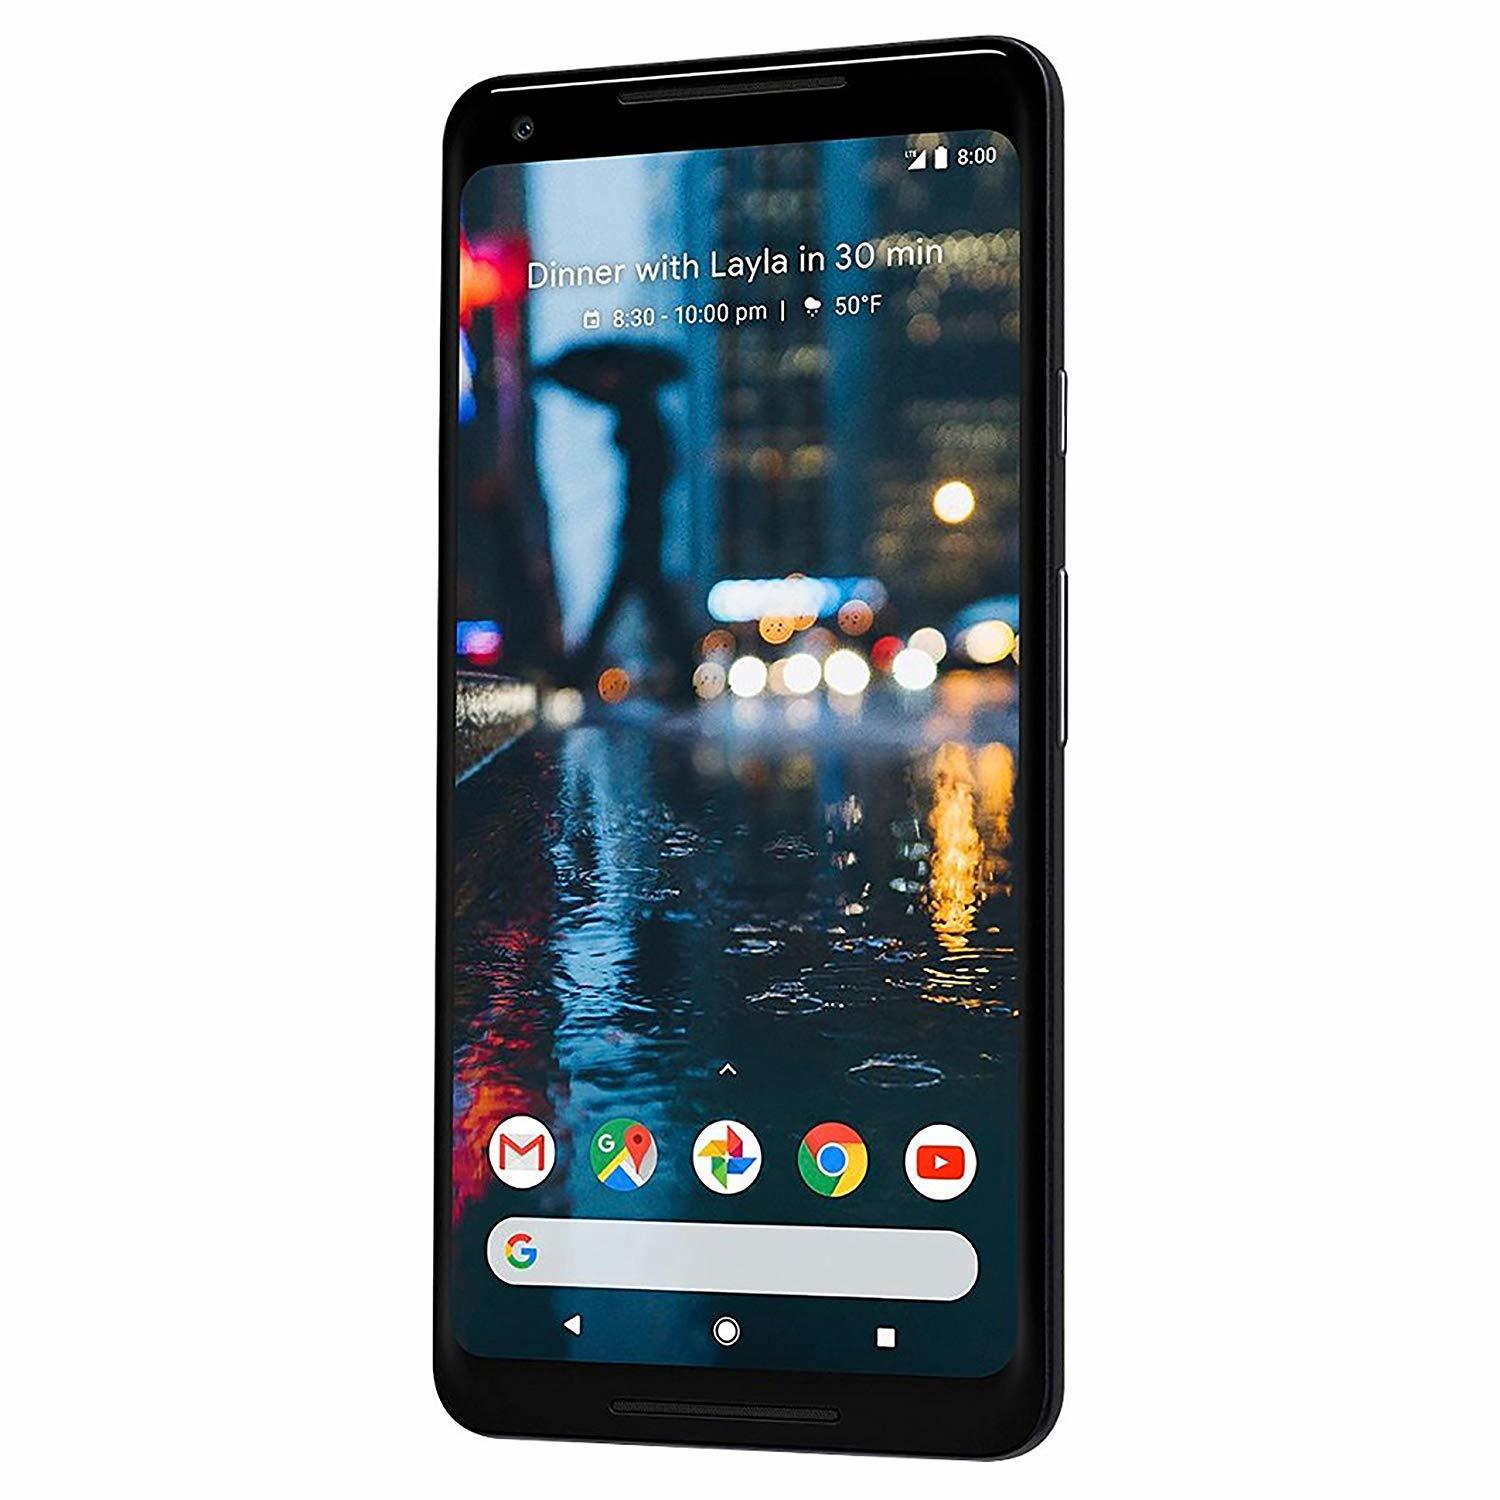 google pixel 2 smartphone